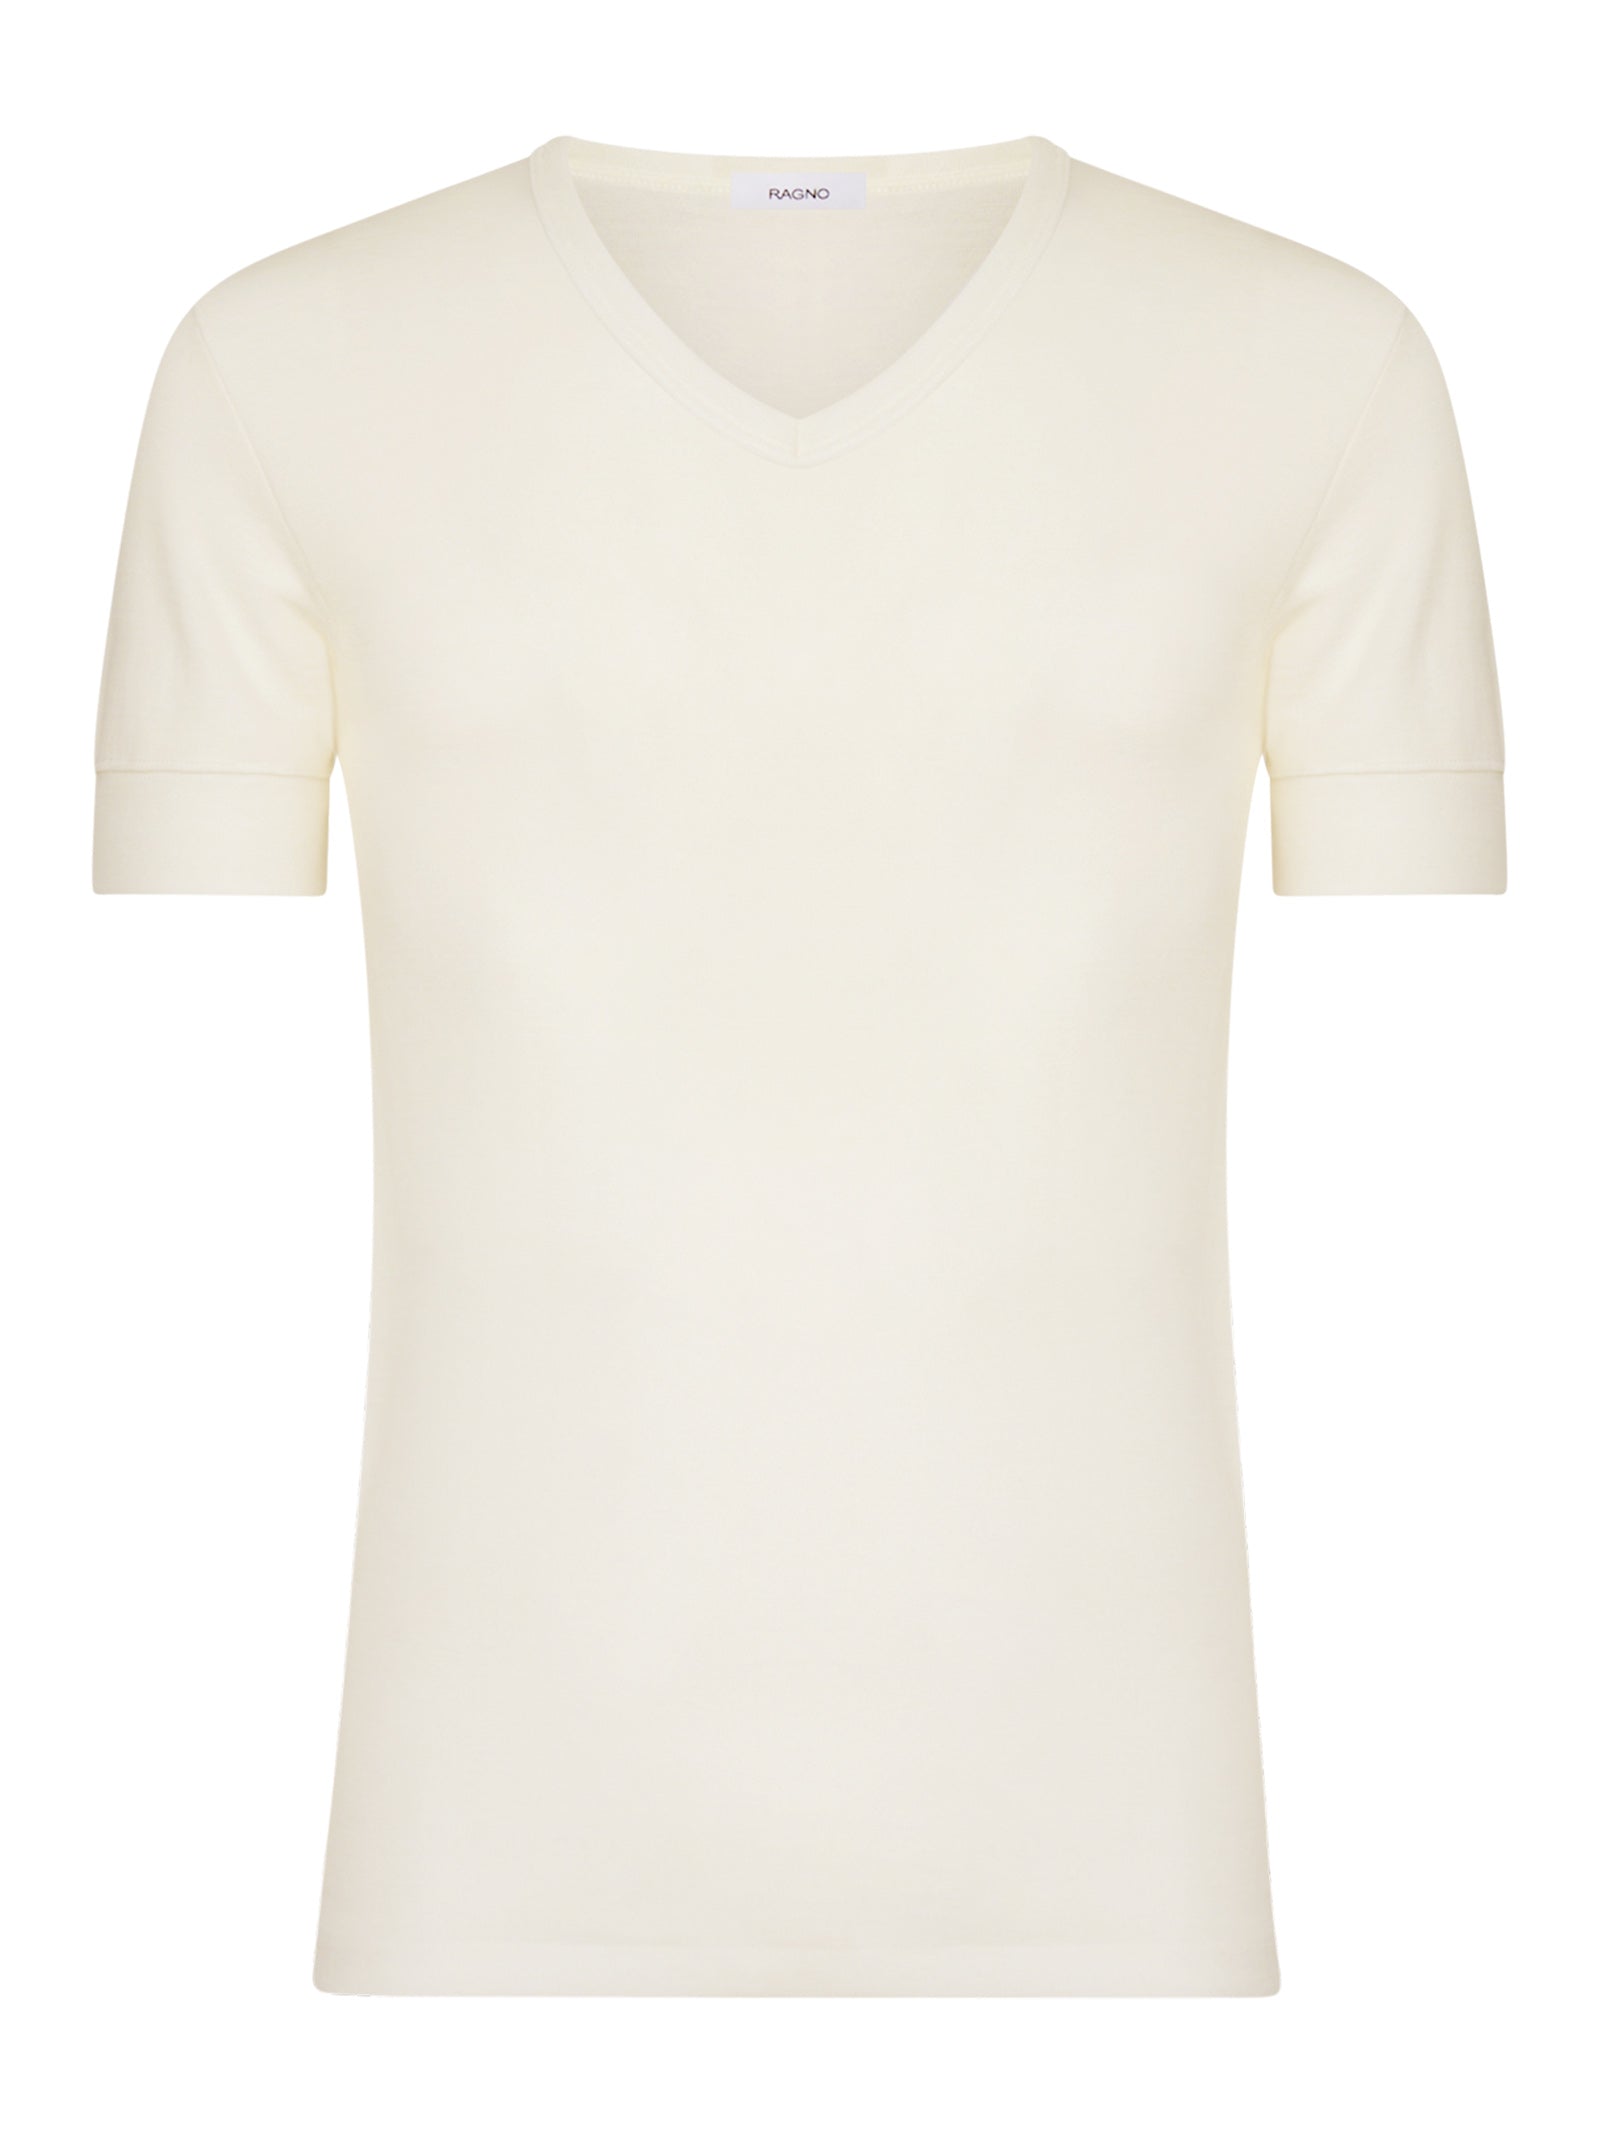 Sintonia luxury - Maglietta con scollo a V lana fuori e cotone sulla pelle -  - Ragno